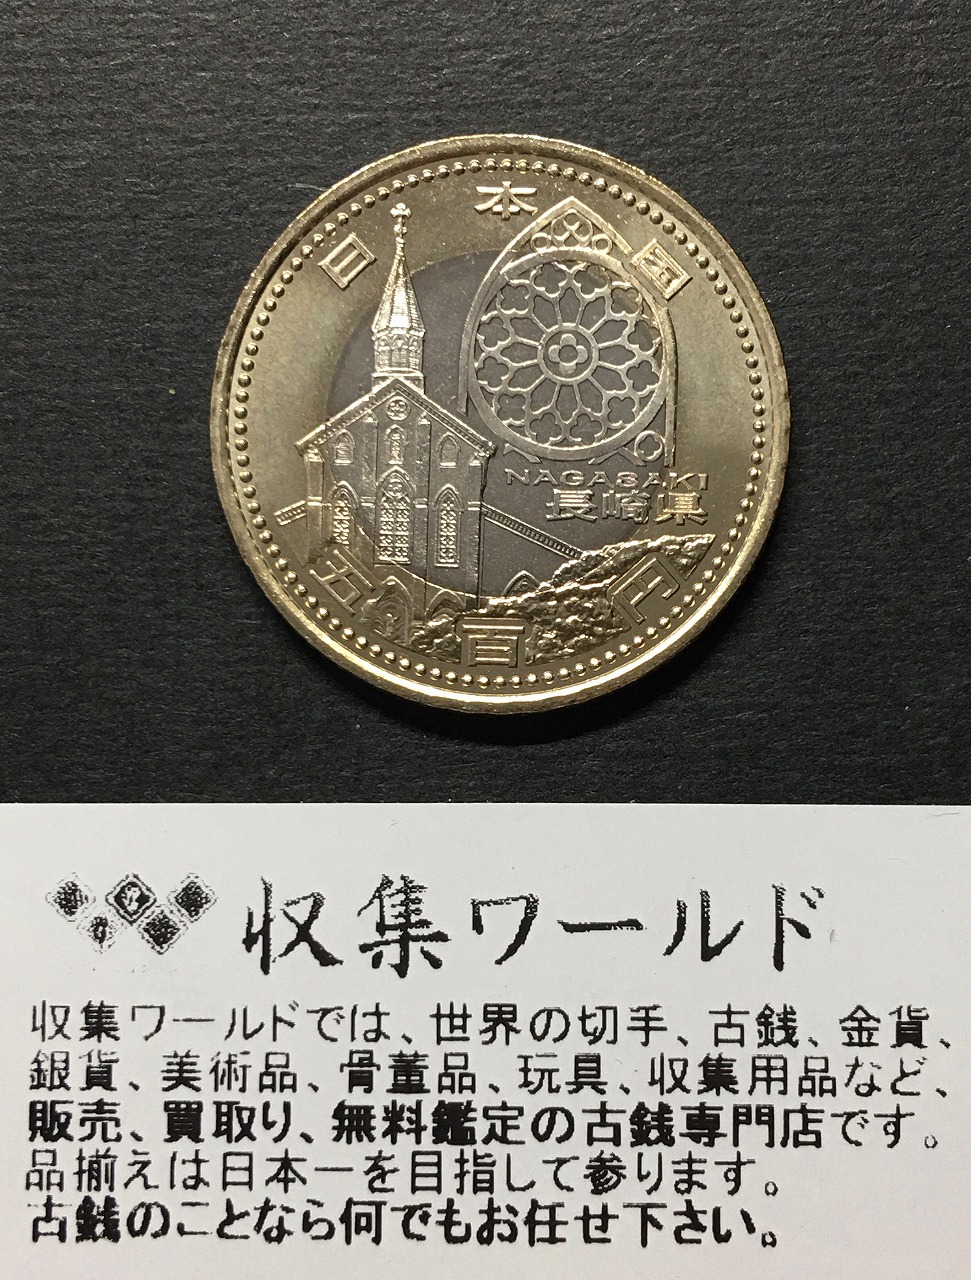 2002年 FIFA日韓ワールドカップ開催記念貨幣発行記念純銀メダル 外箱